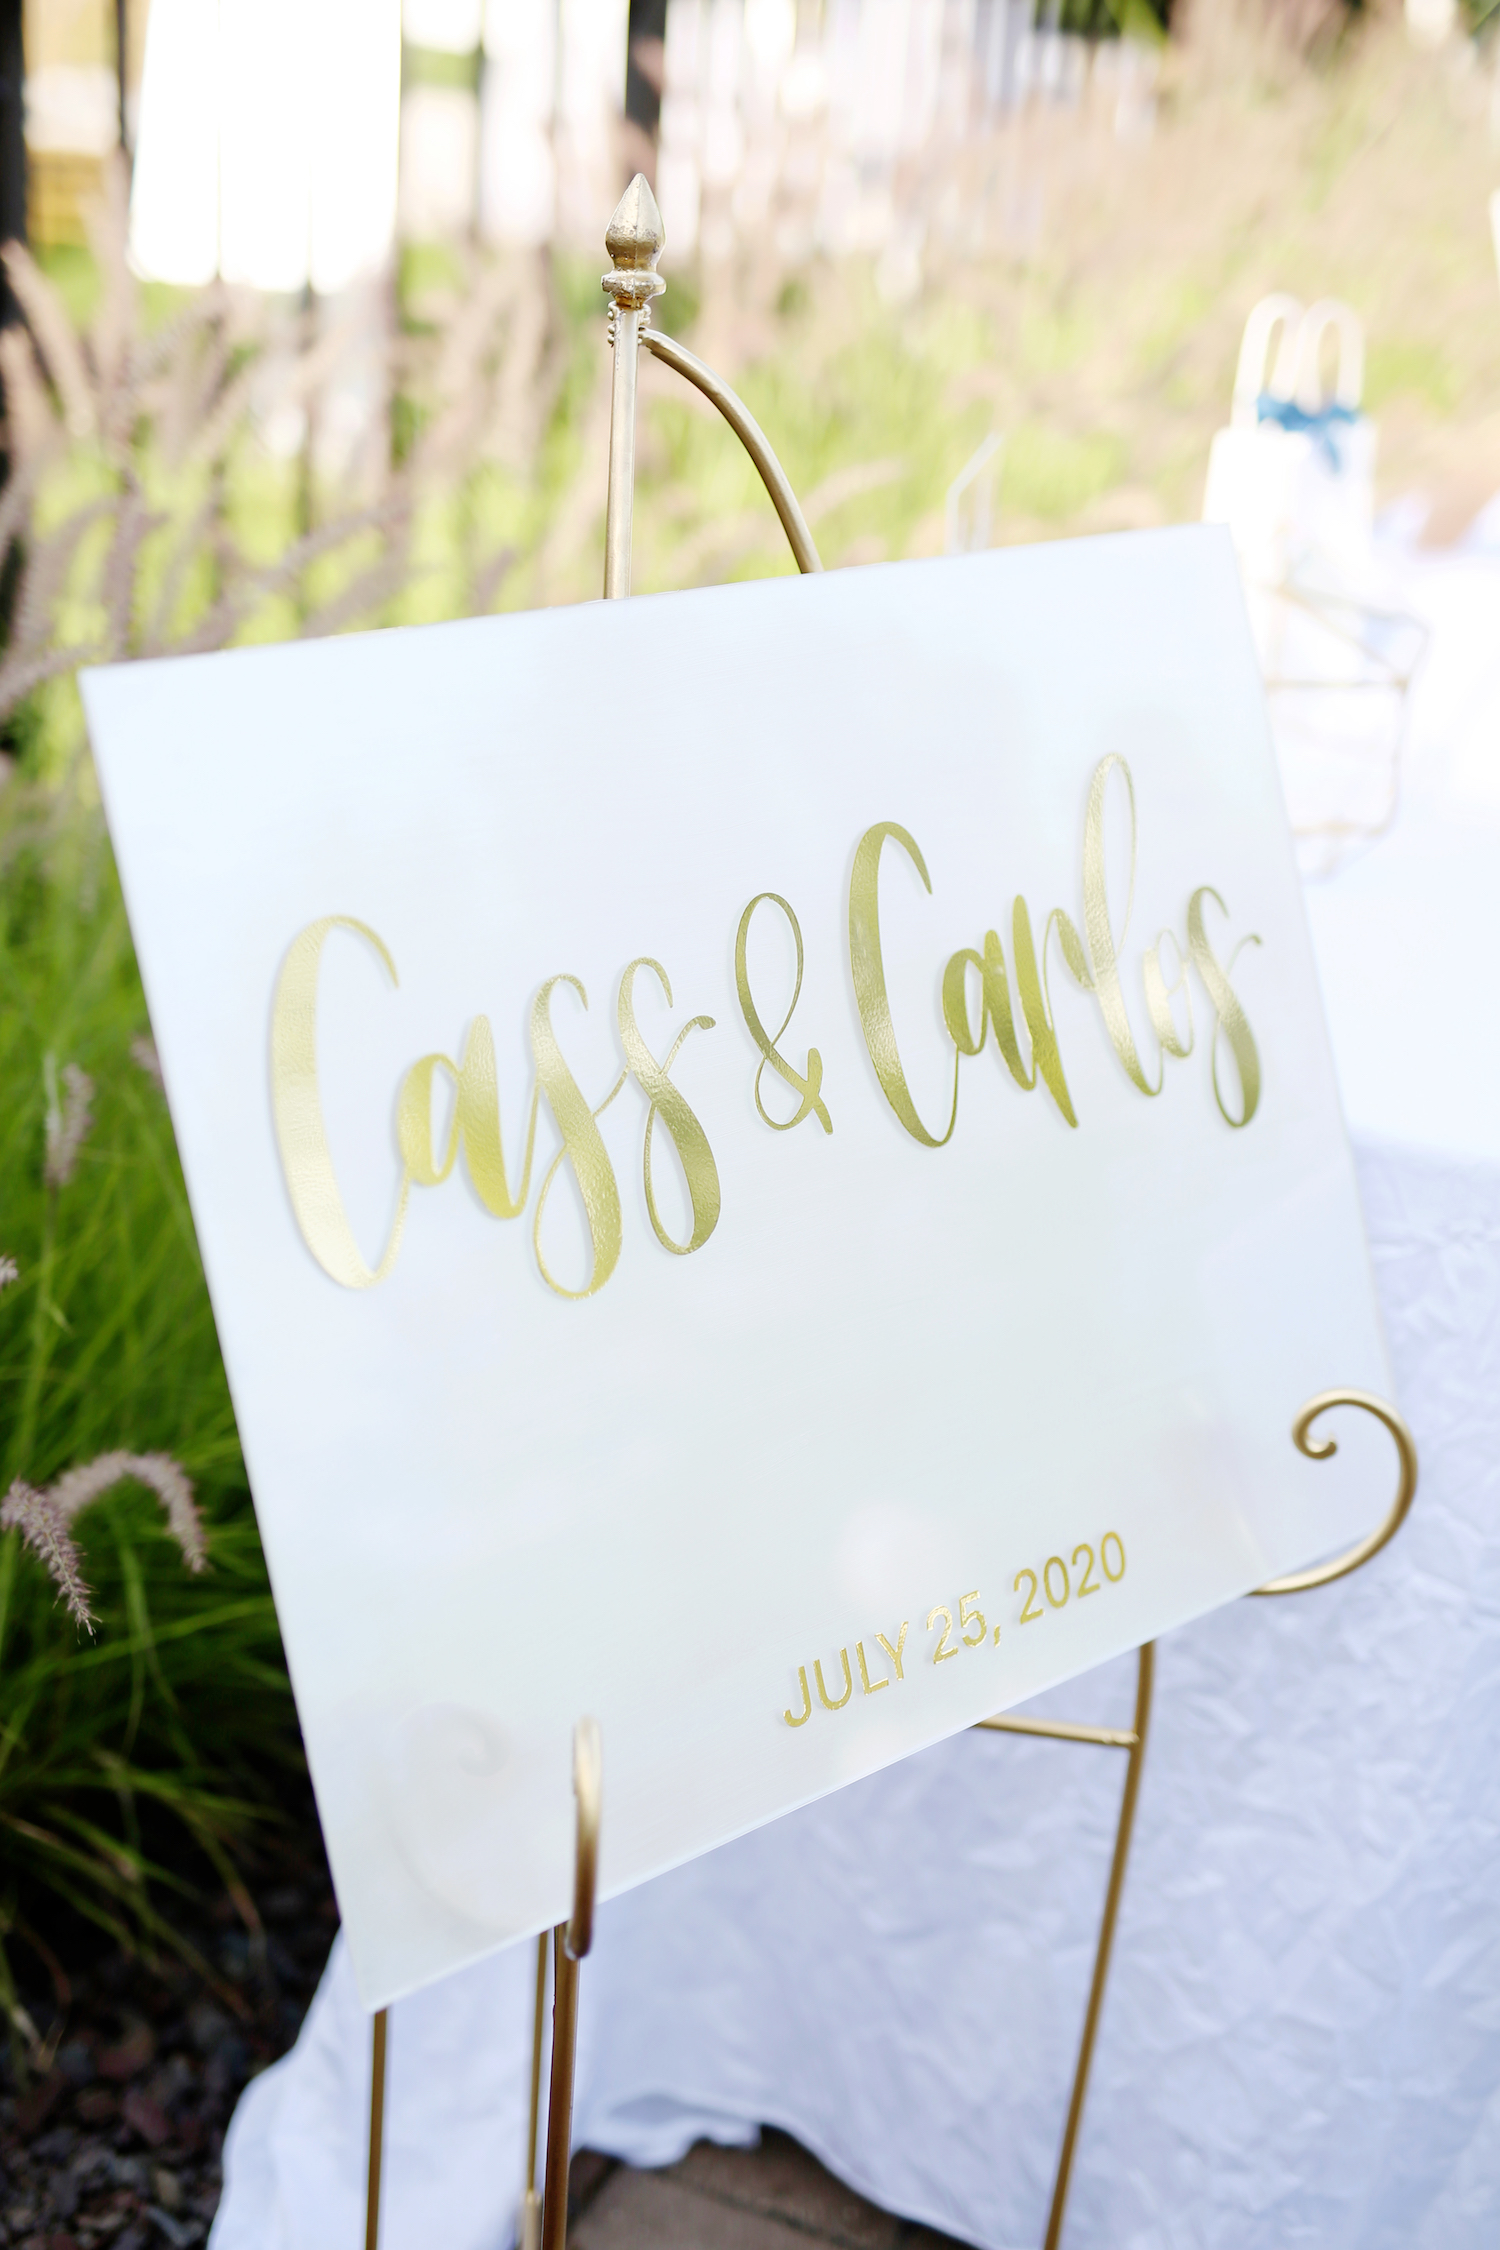 Cass & Carlos sign at kalamazoo michigan wedding